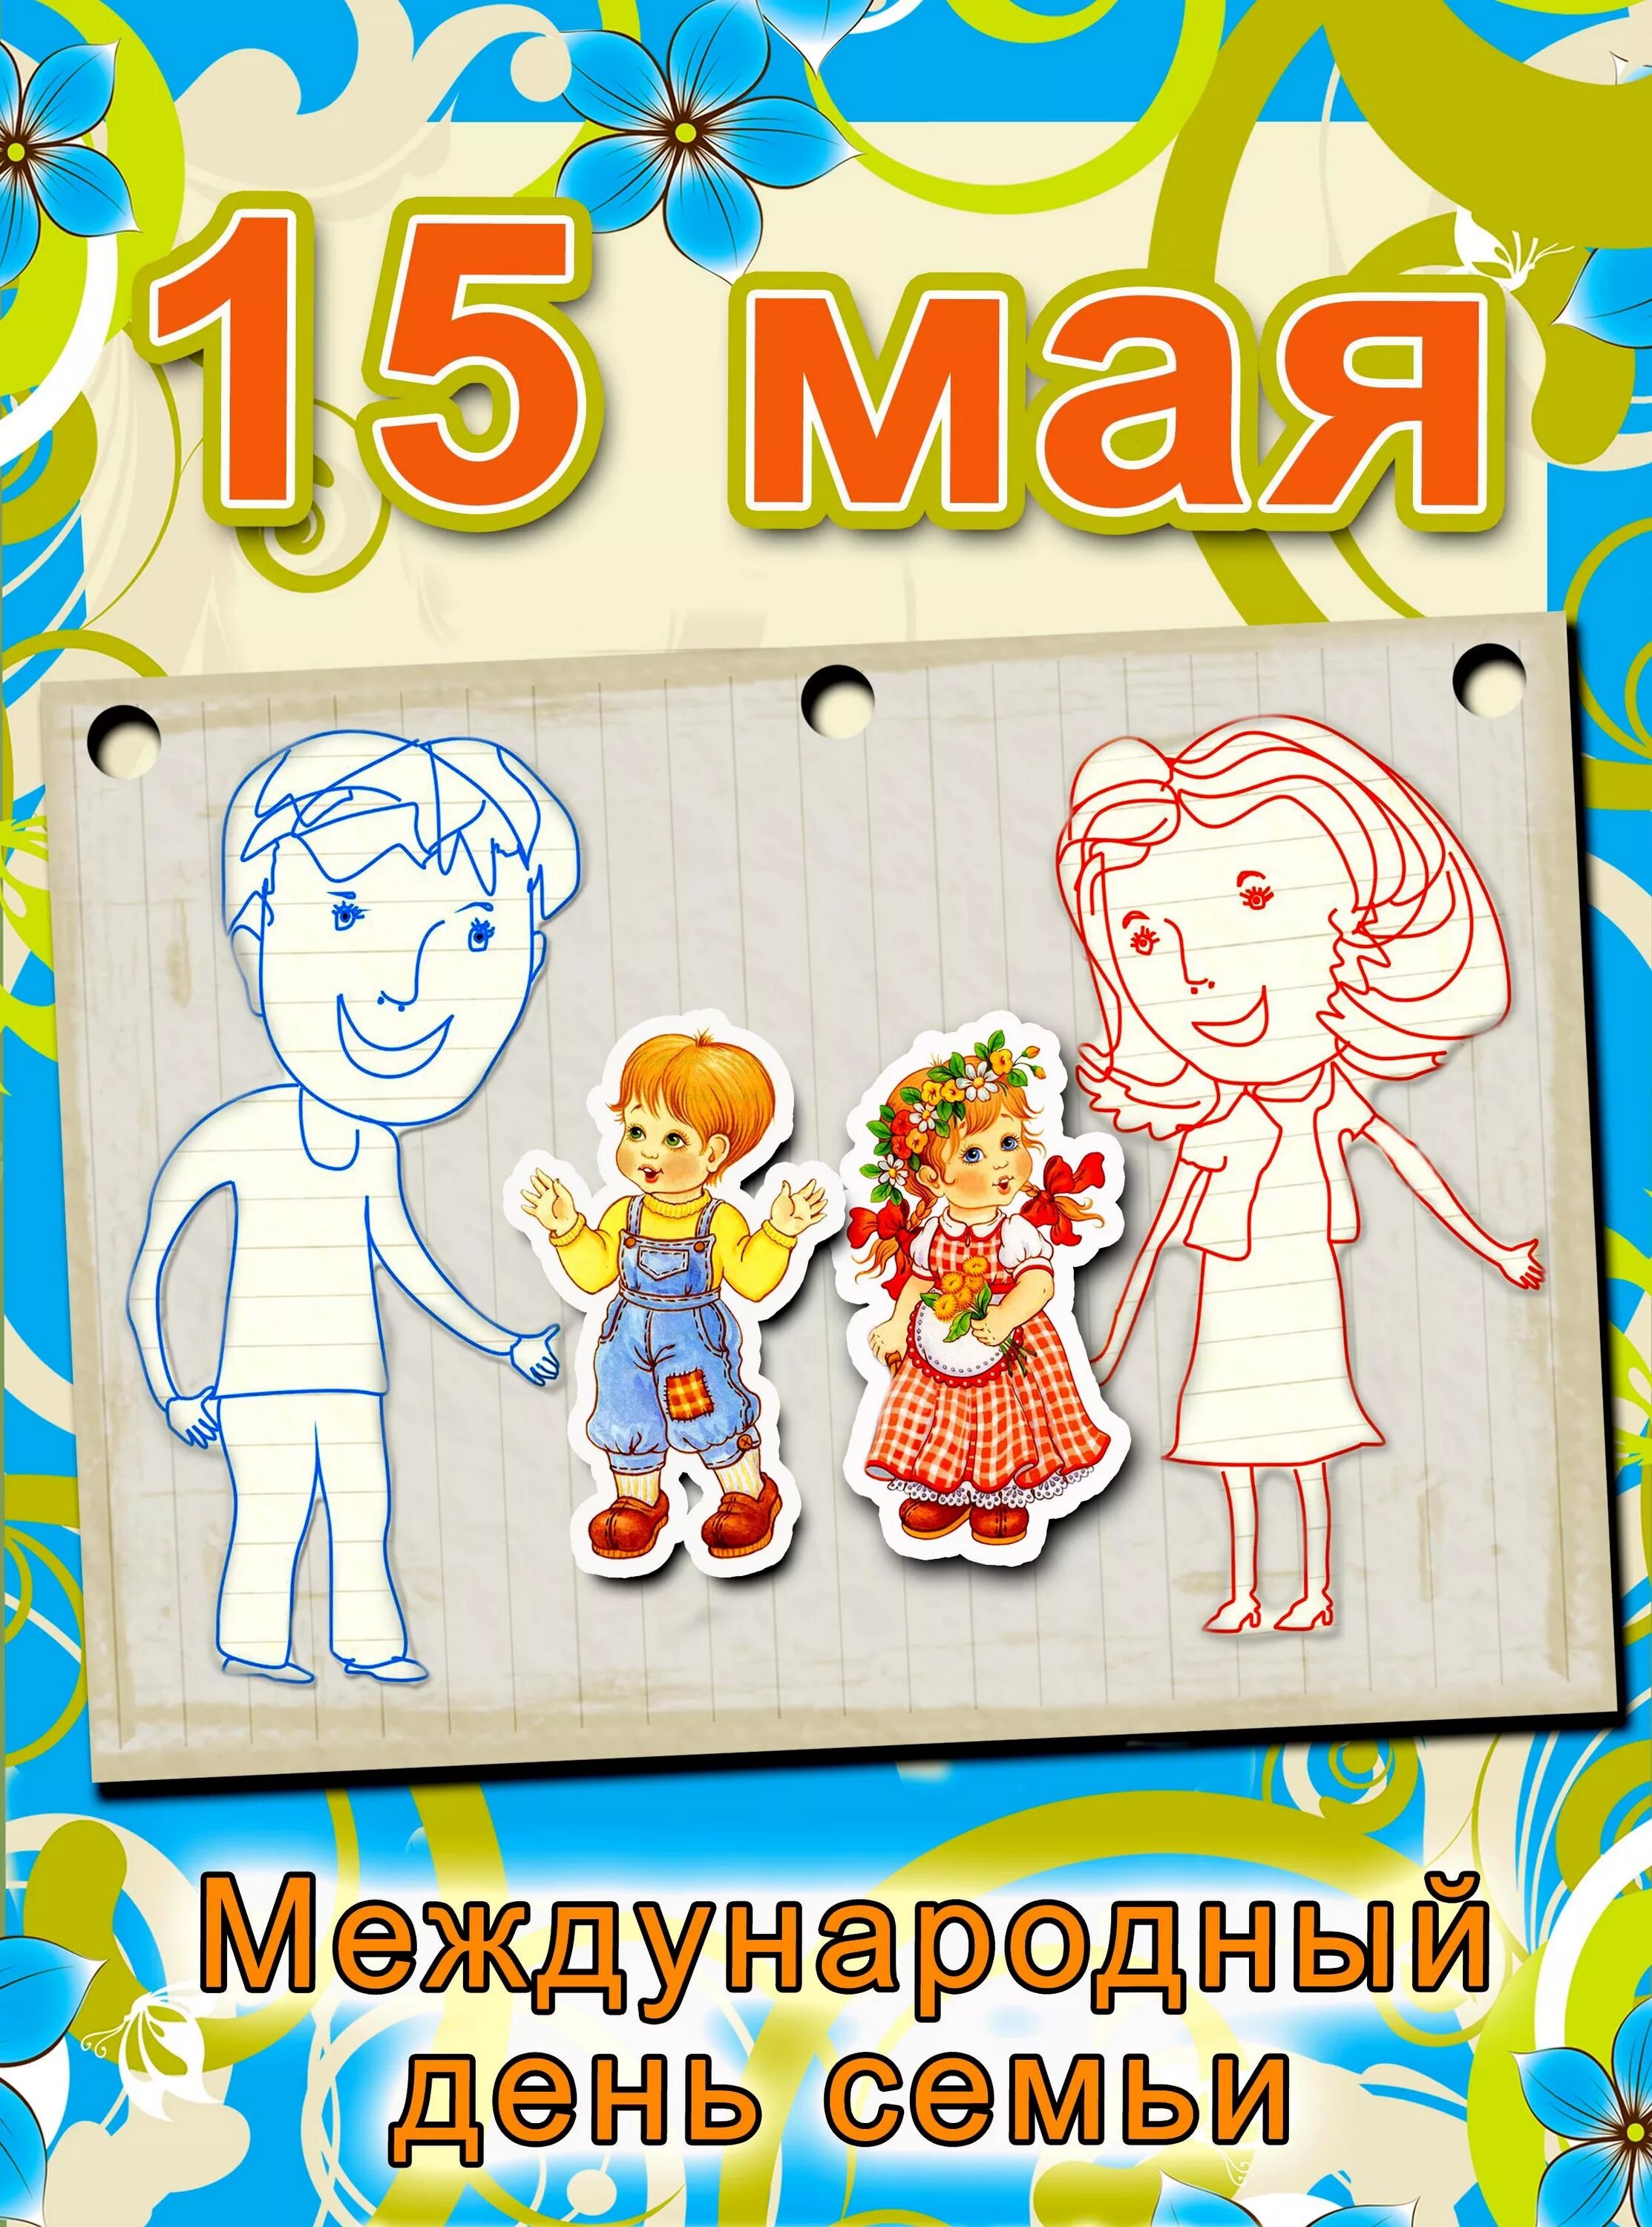 Дети семьи 15 мая. Международный день семьи. День семьи 15 мая. Международный деньснмьи. Международныйдееь семьи.